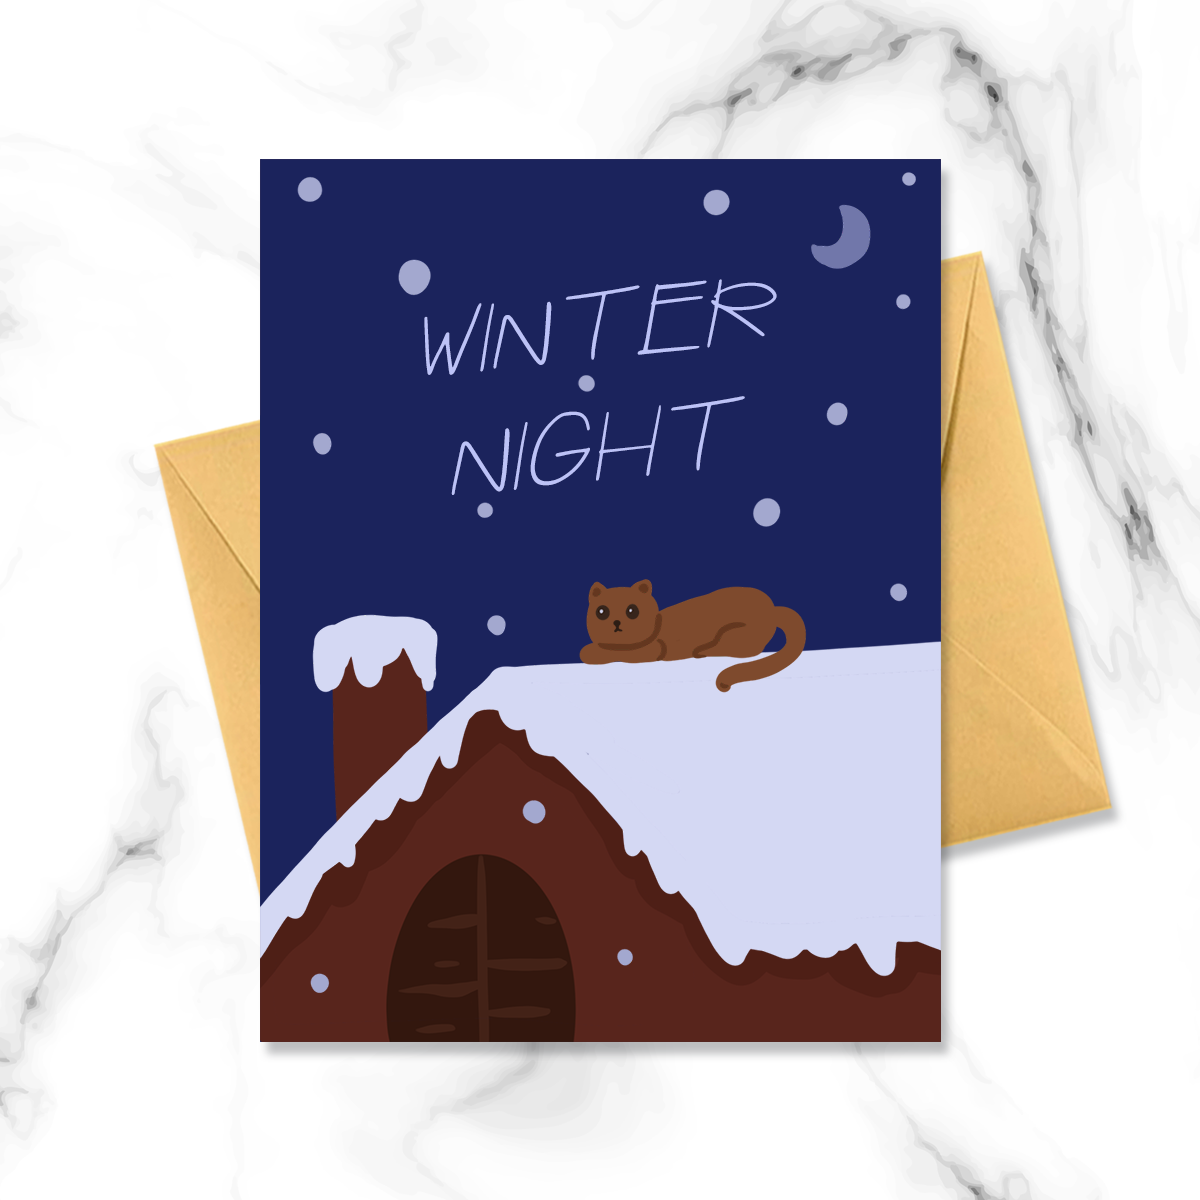 下雪的冬夜屋顶小猫咪图片